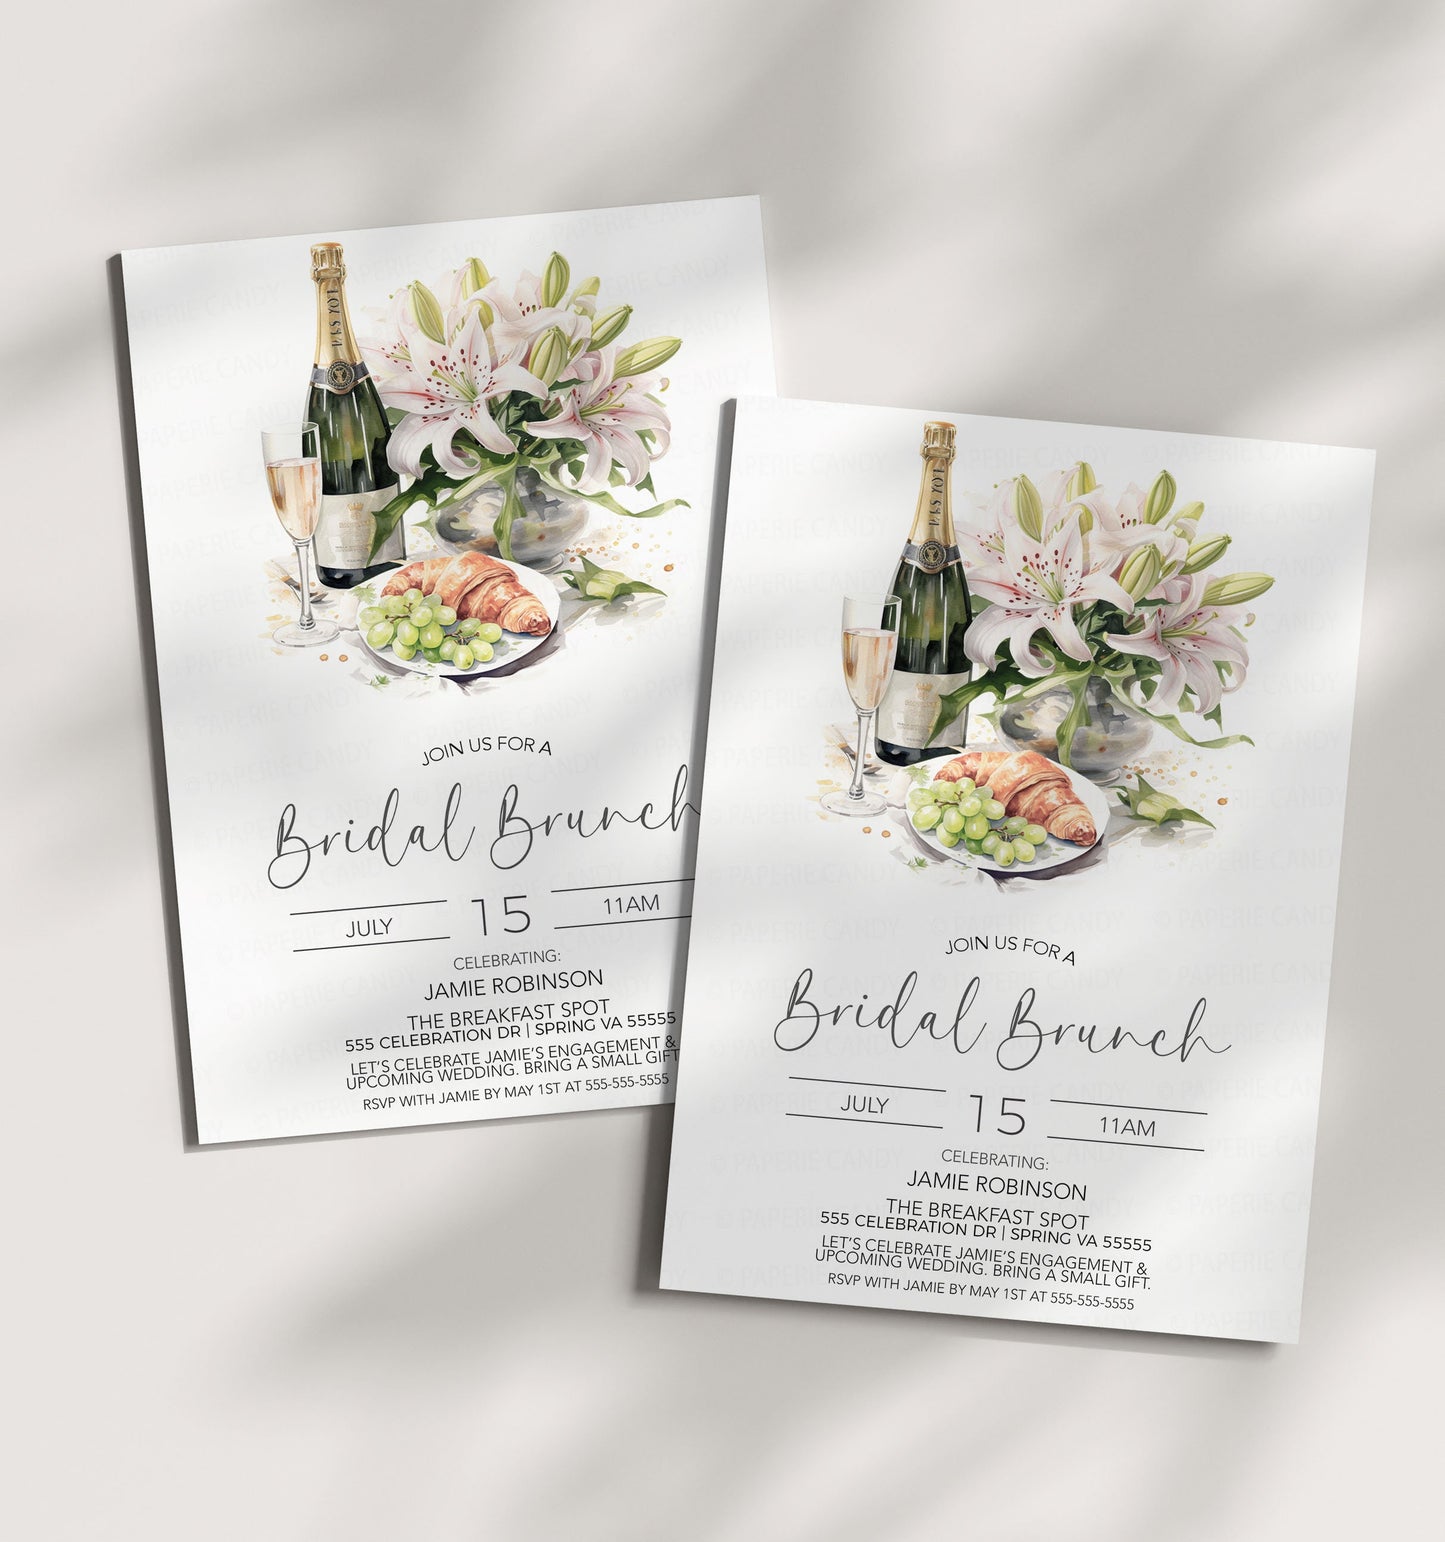 Bridal Brunch Invitation, Engagement Brunch Invite, Morning After Wedding Brunch, Champagne Bridal Shower, Wedding Rehearsal Brunch Editable